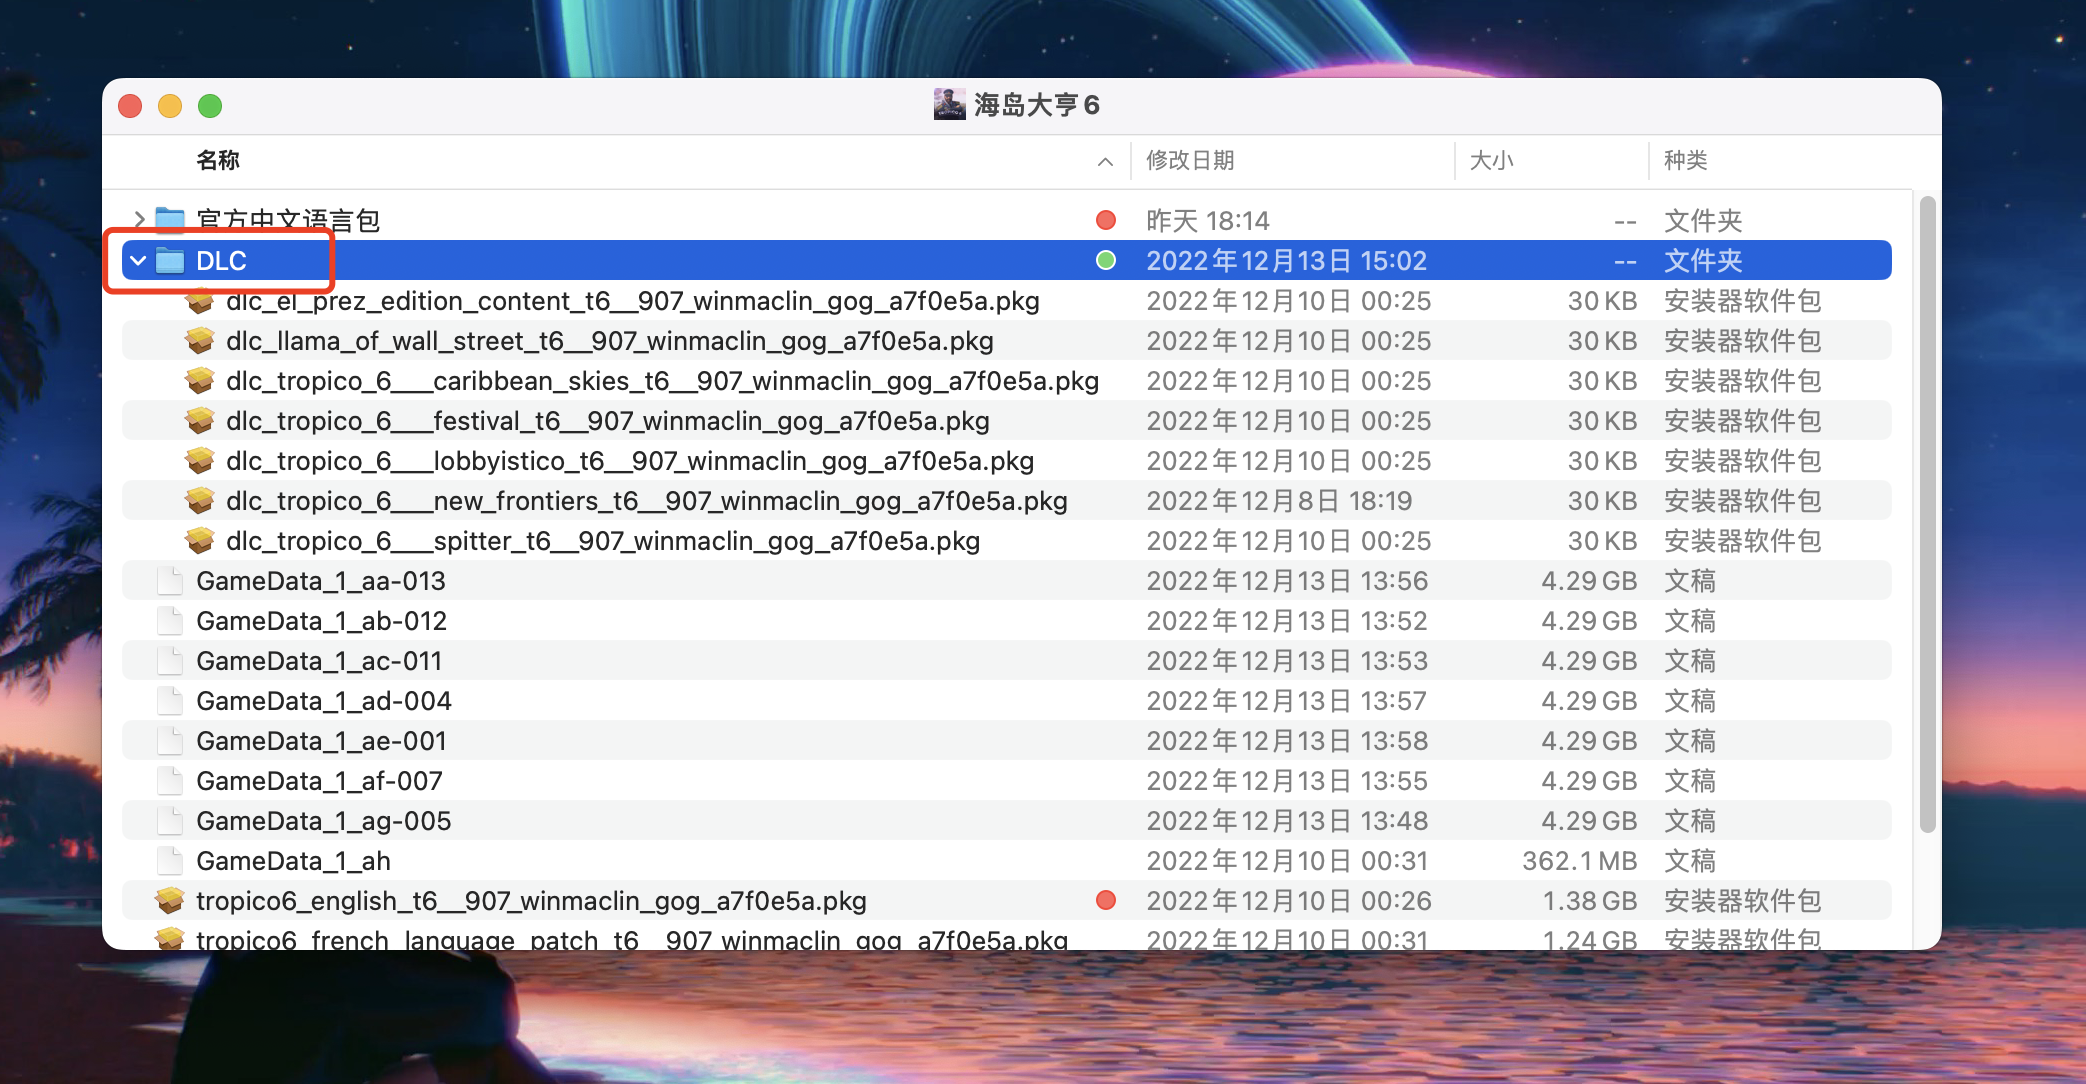 海岛大亨6 for Mac 安装激活以及中文设置教程 苹果电脑